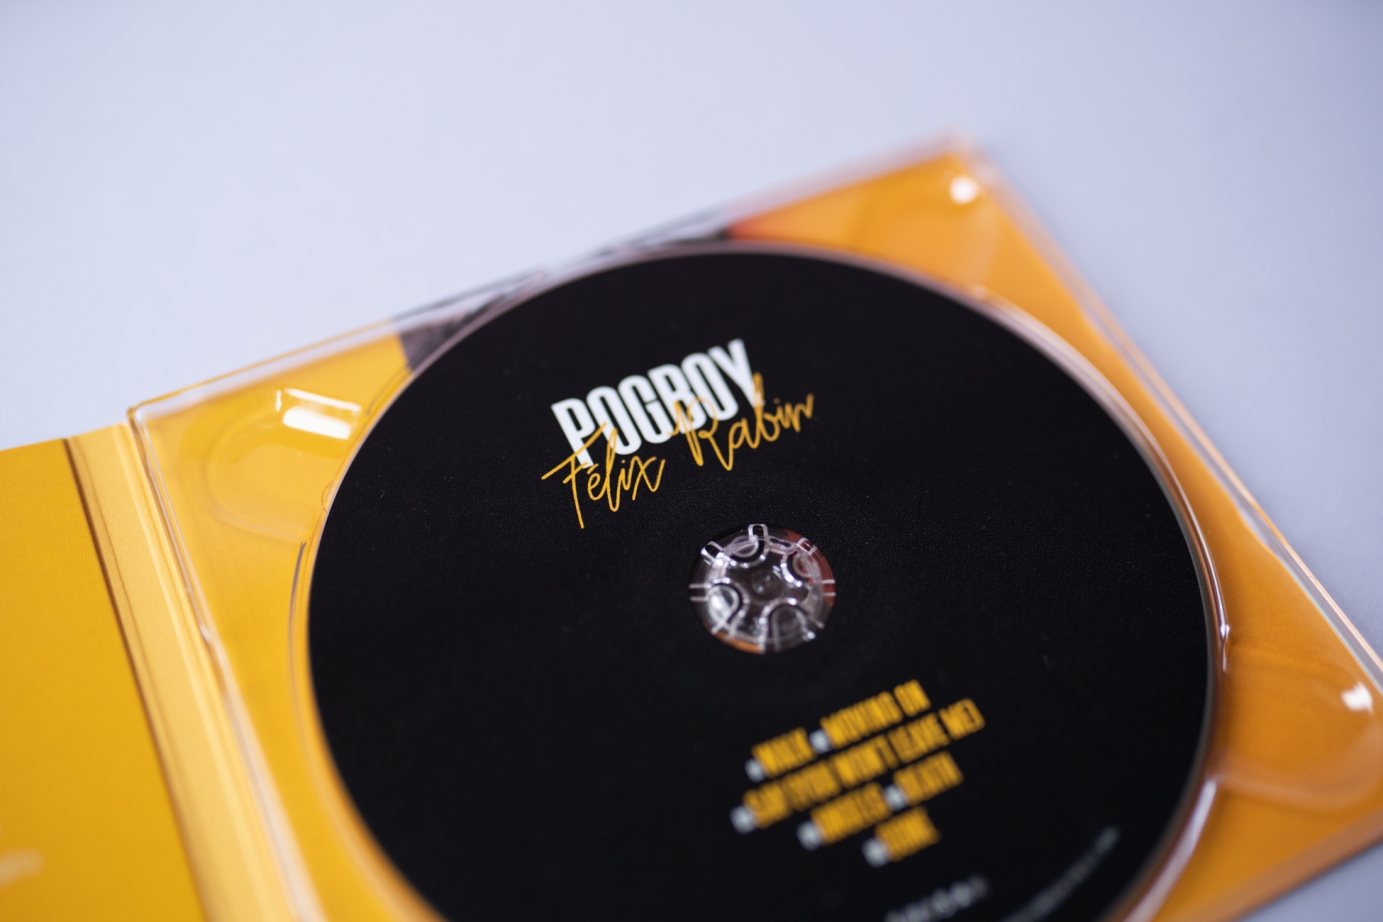 Felix Rabin "Pogboy" EP